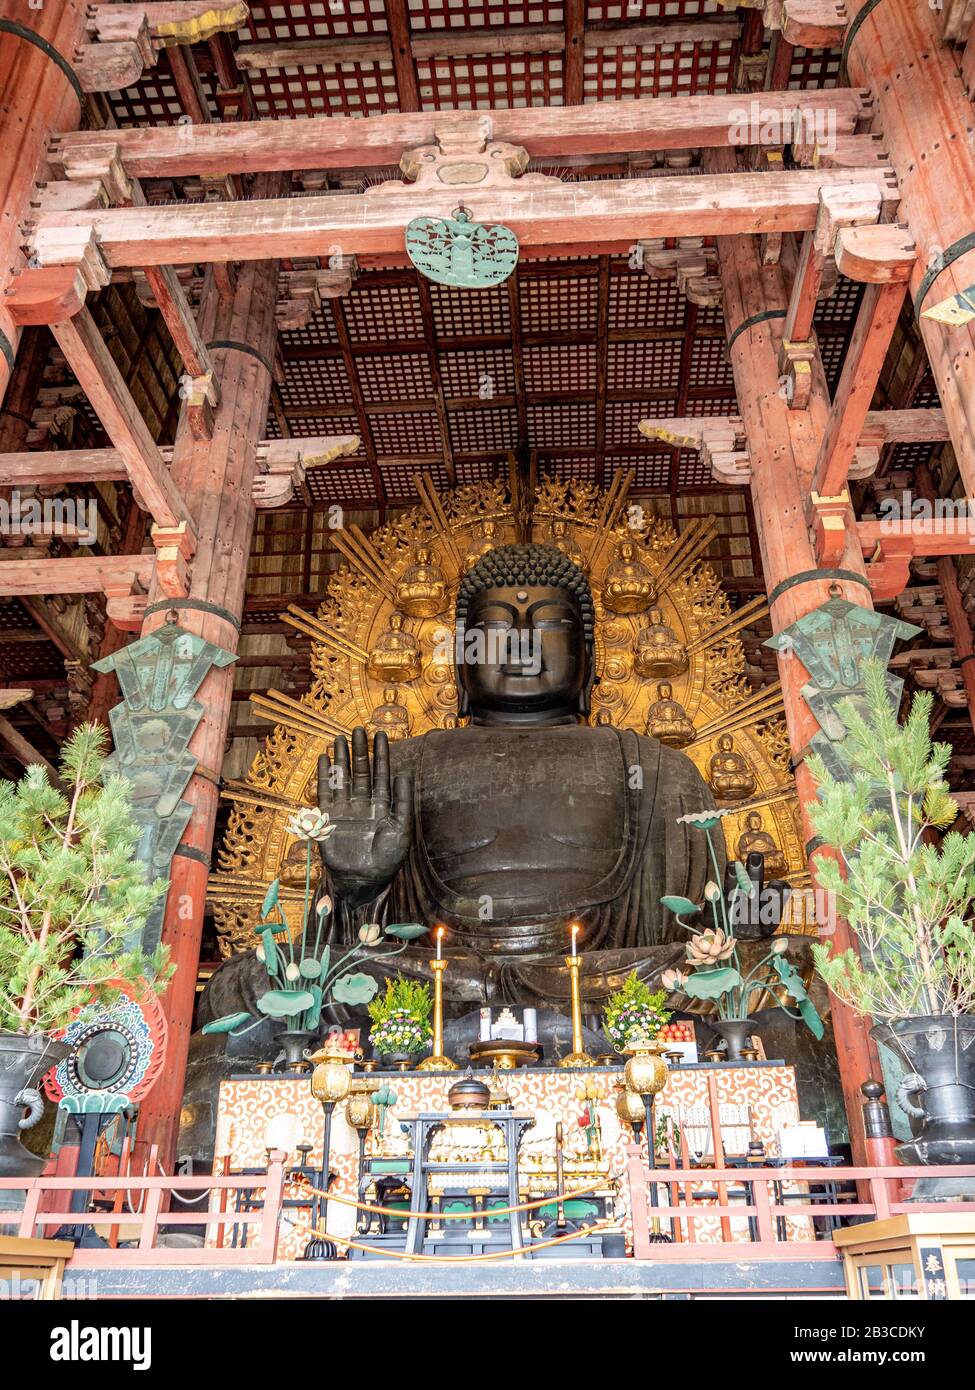 Grand Bouddha du temple Todai-ji, site de l'UNESCO et jusqu'à récemment l'un des plus grands bâtiments en bois au monde. Banque D'Images